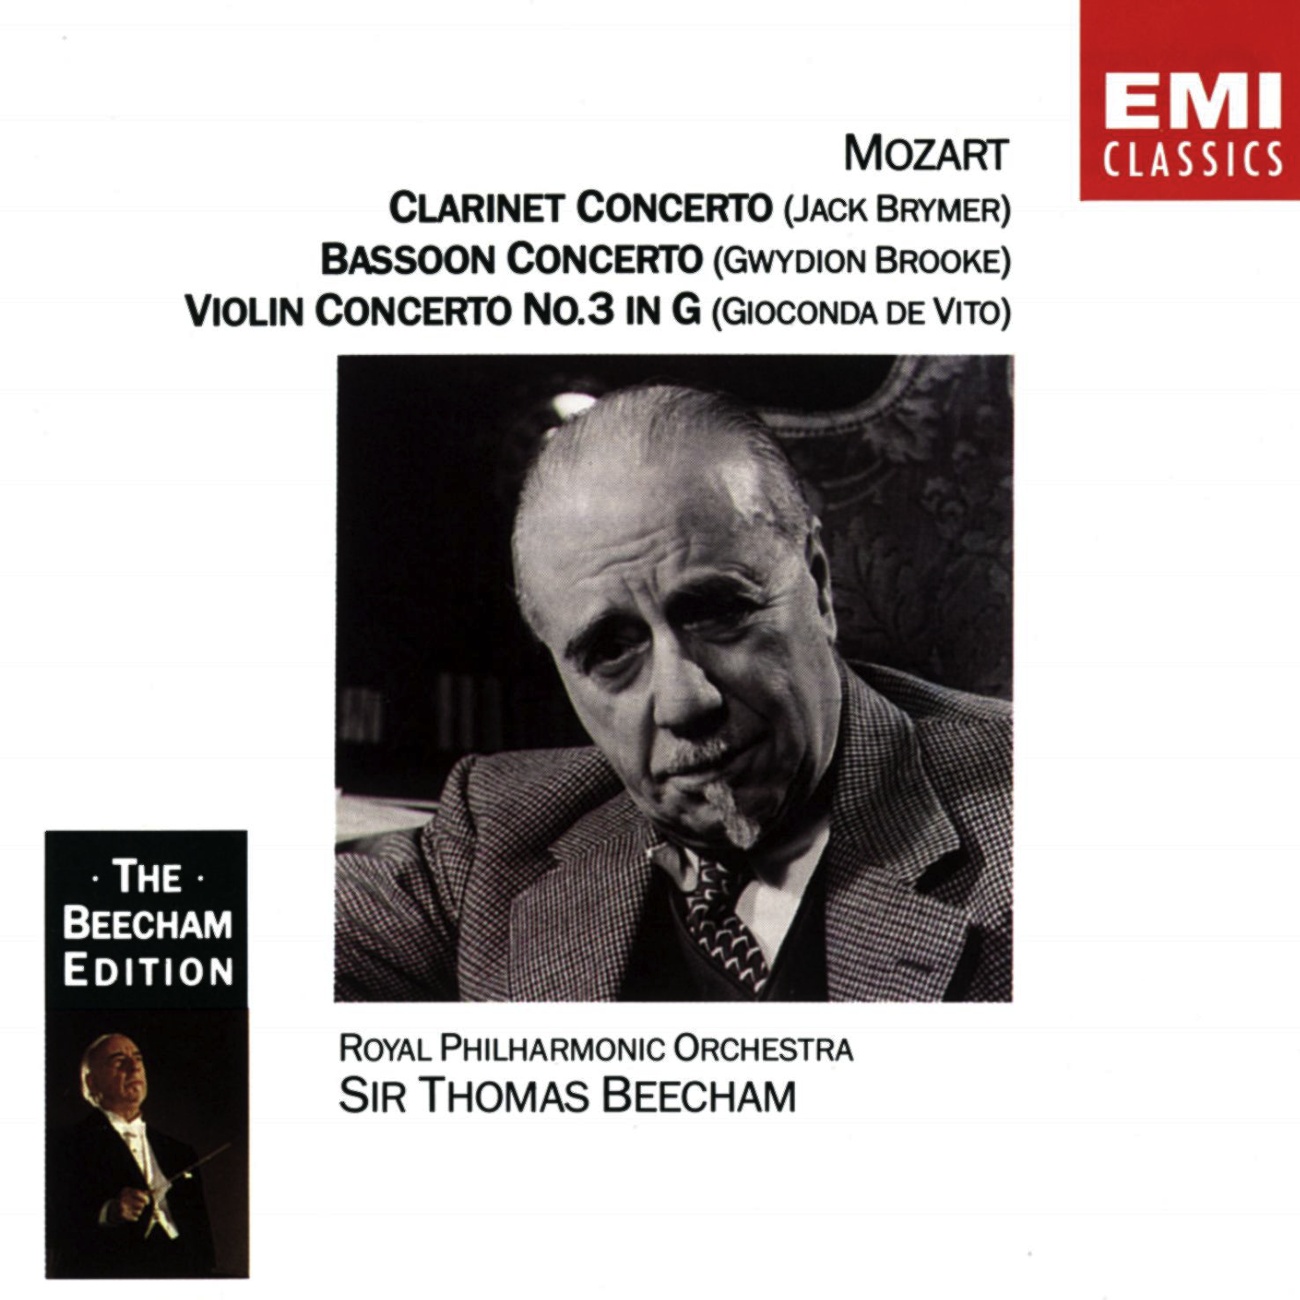 Bassoon Concerto in B flat Major K191 (1991 Digital Remaster): Allegro